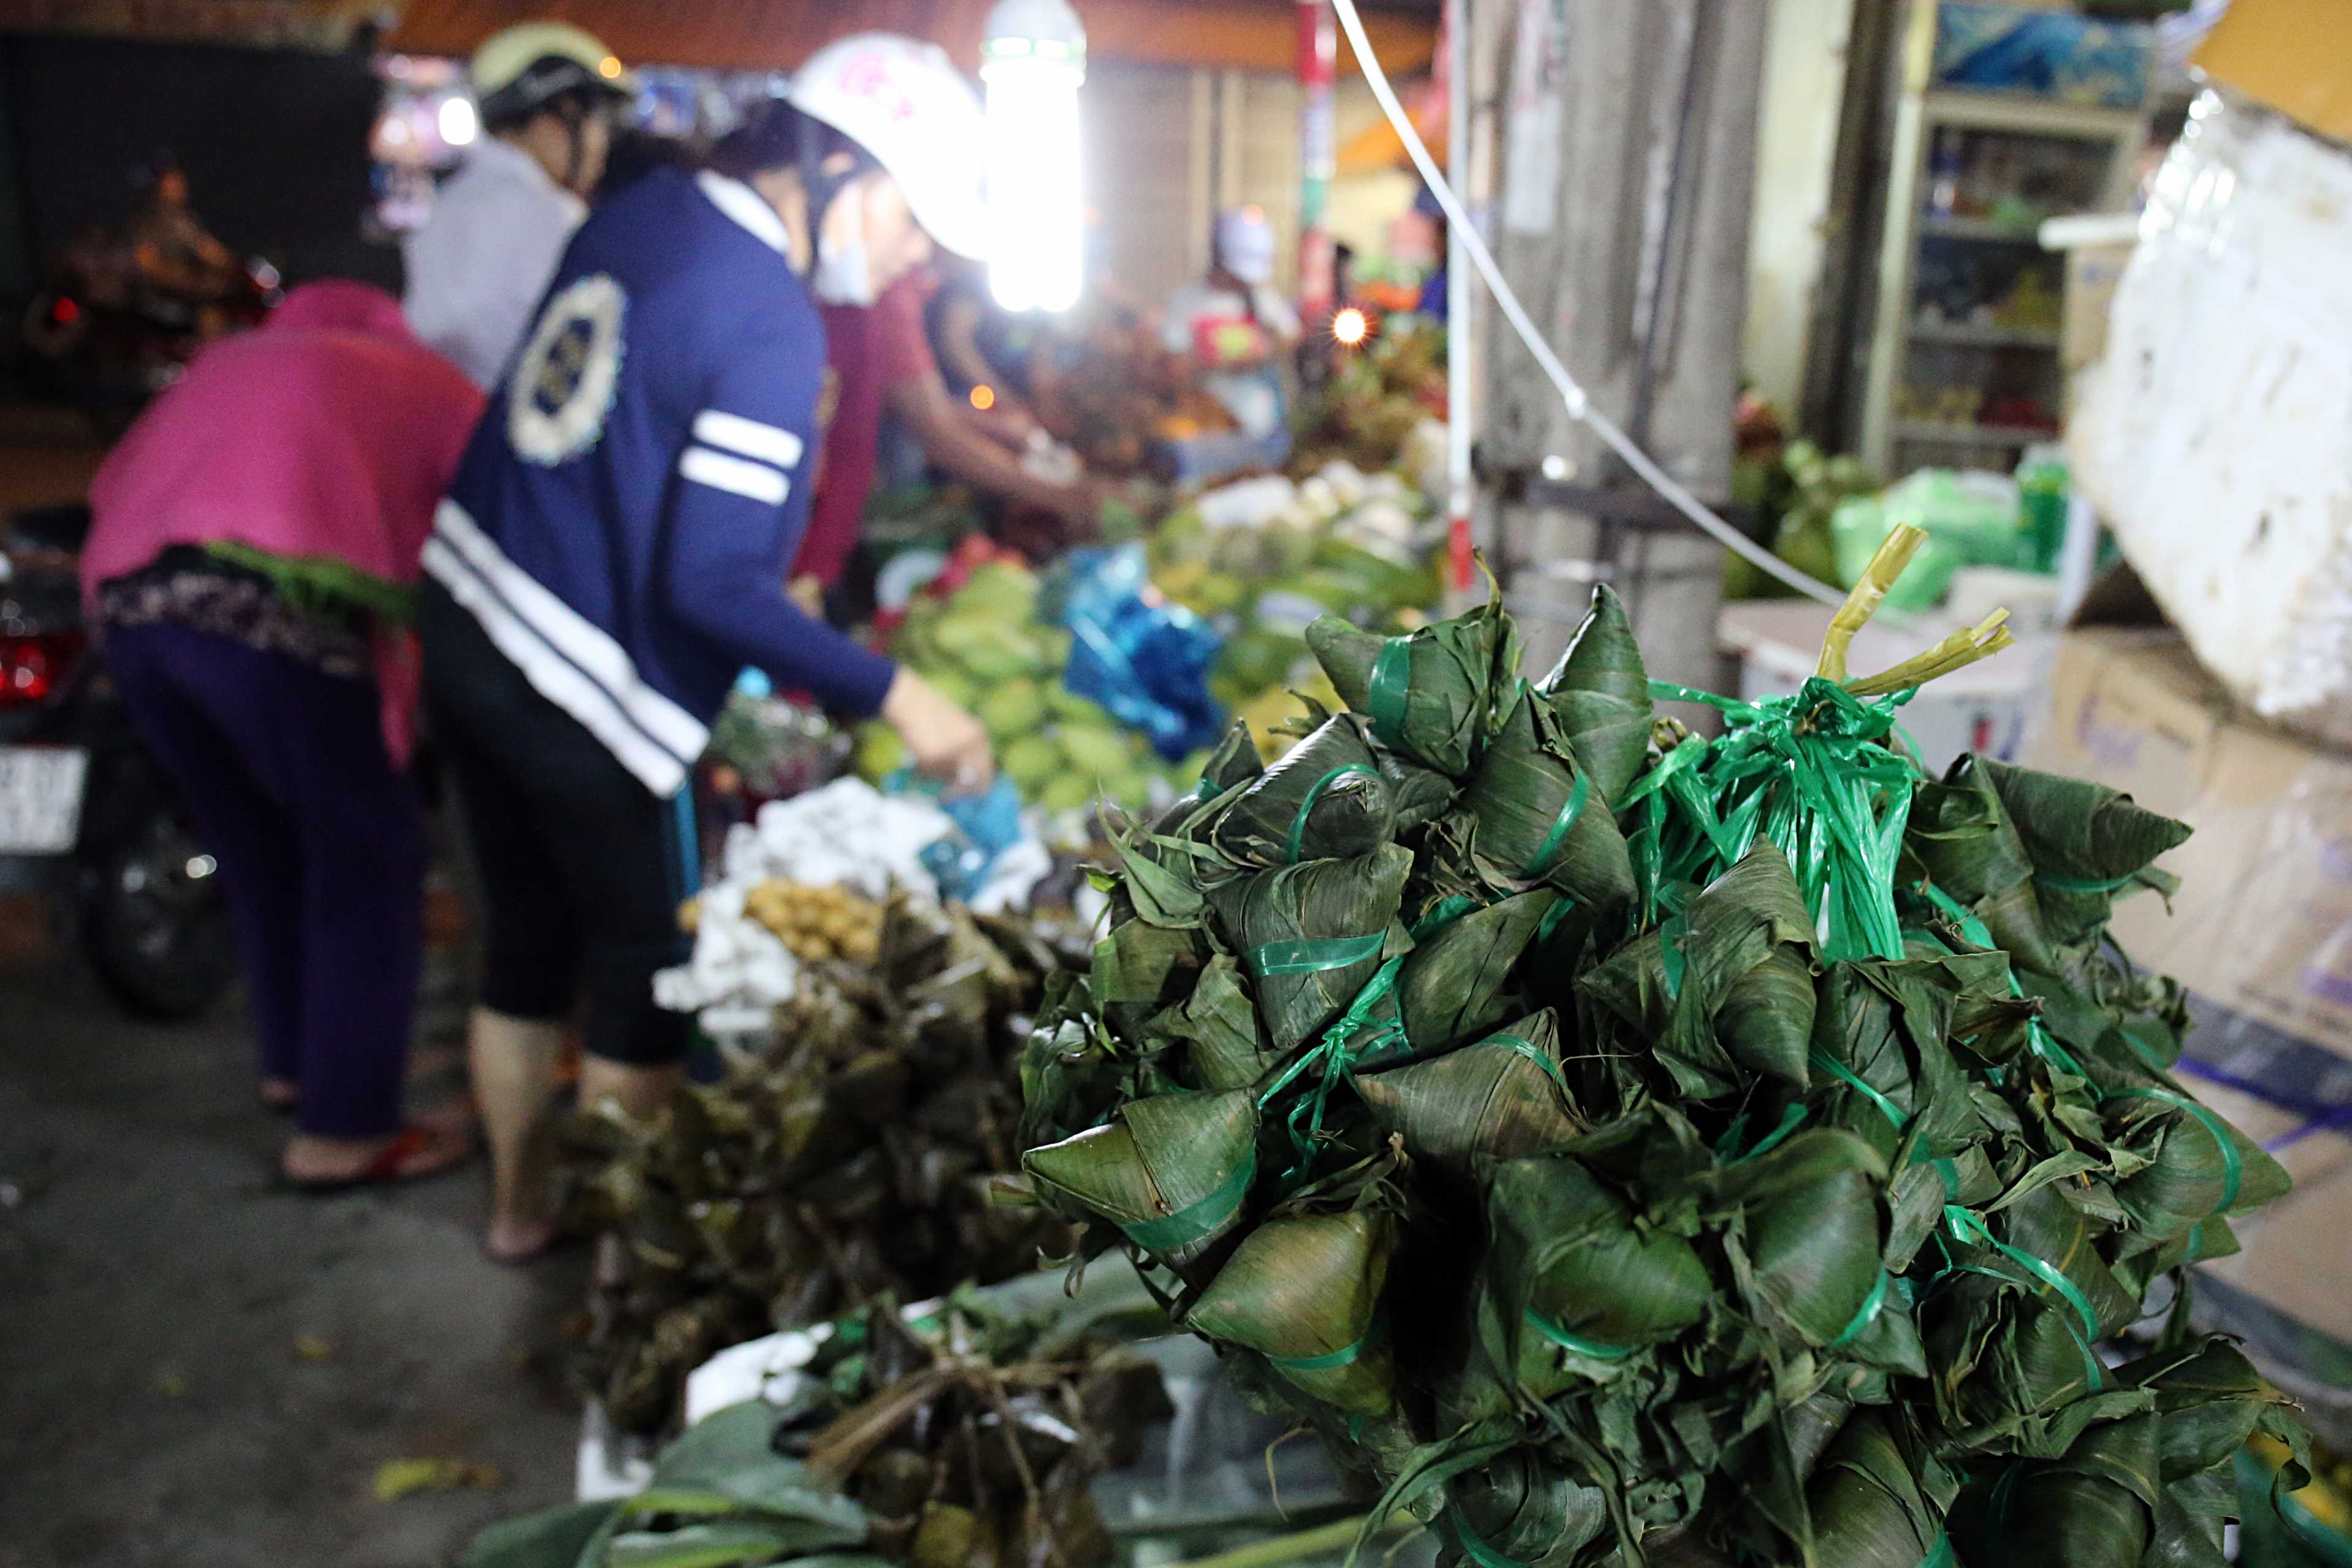 Trên chợ Bà Hoa (quận Tân Bình) nhiều người tấp nập tranh thủ mua bán ngay trong đêm để sáng sớm kịp cúng theo đúng phong tục